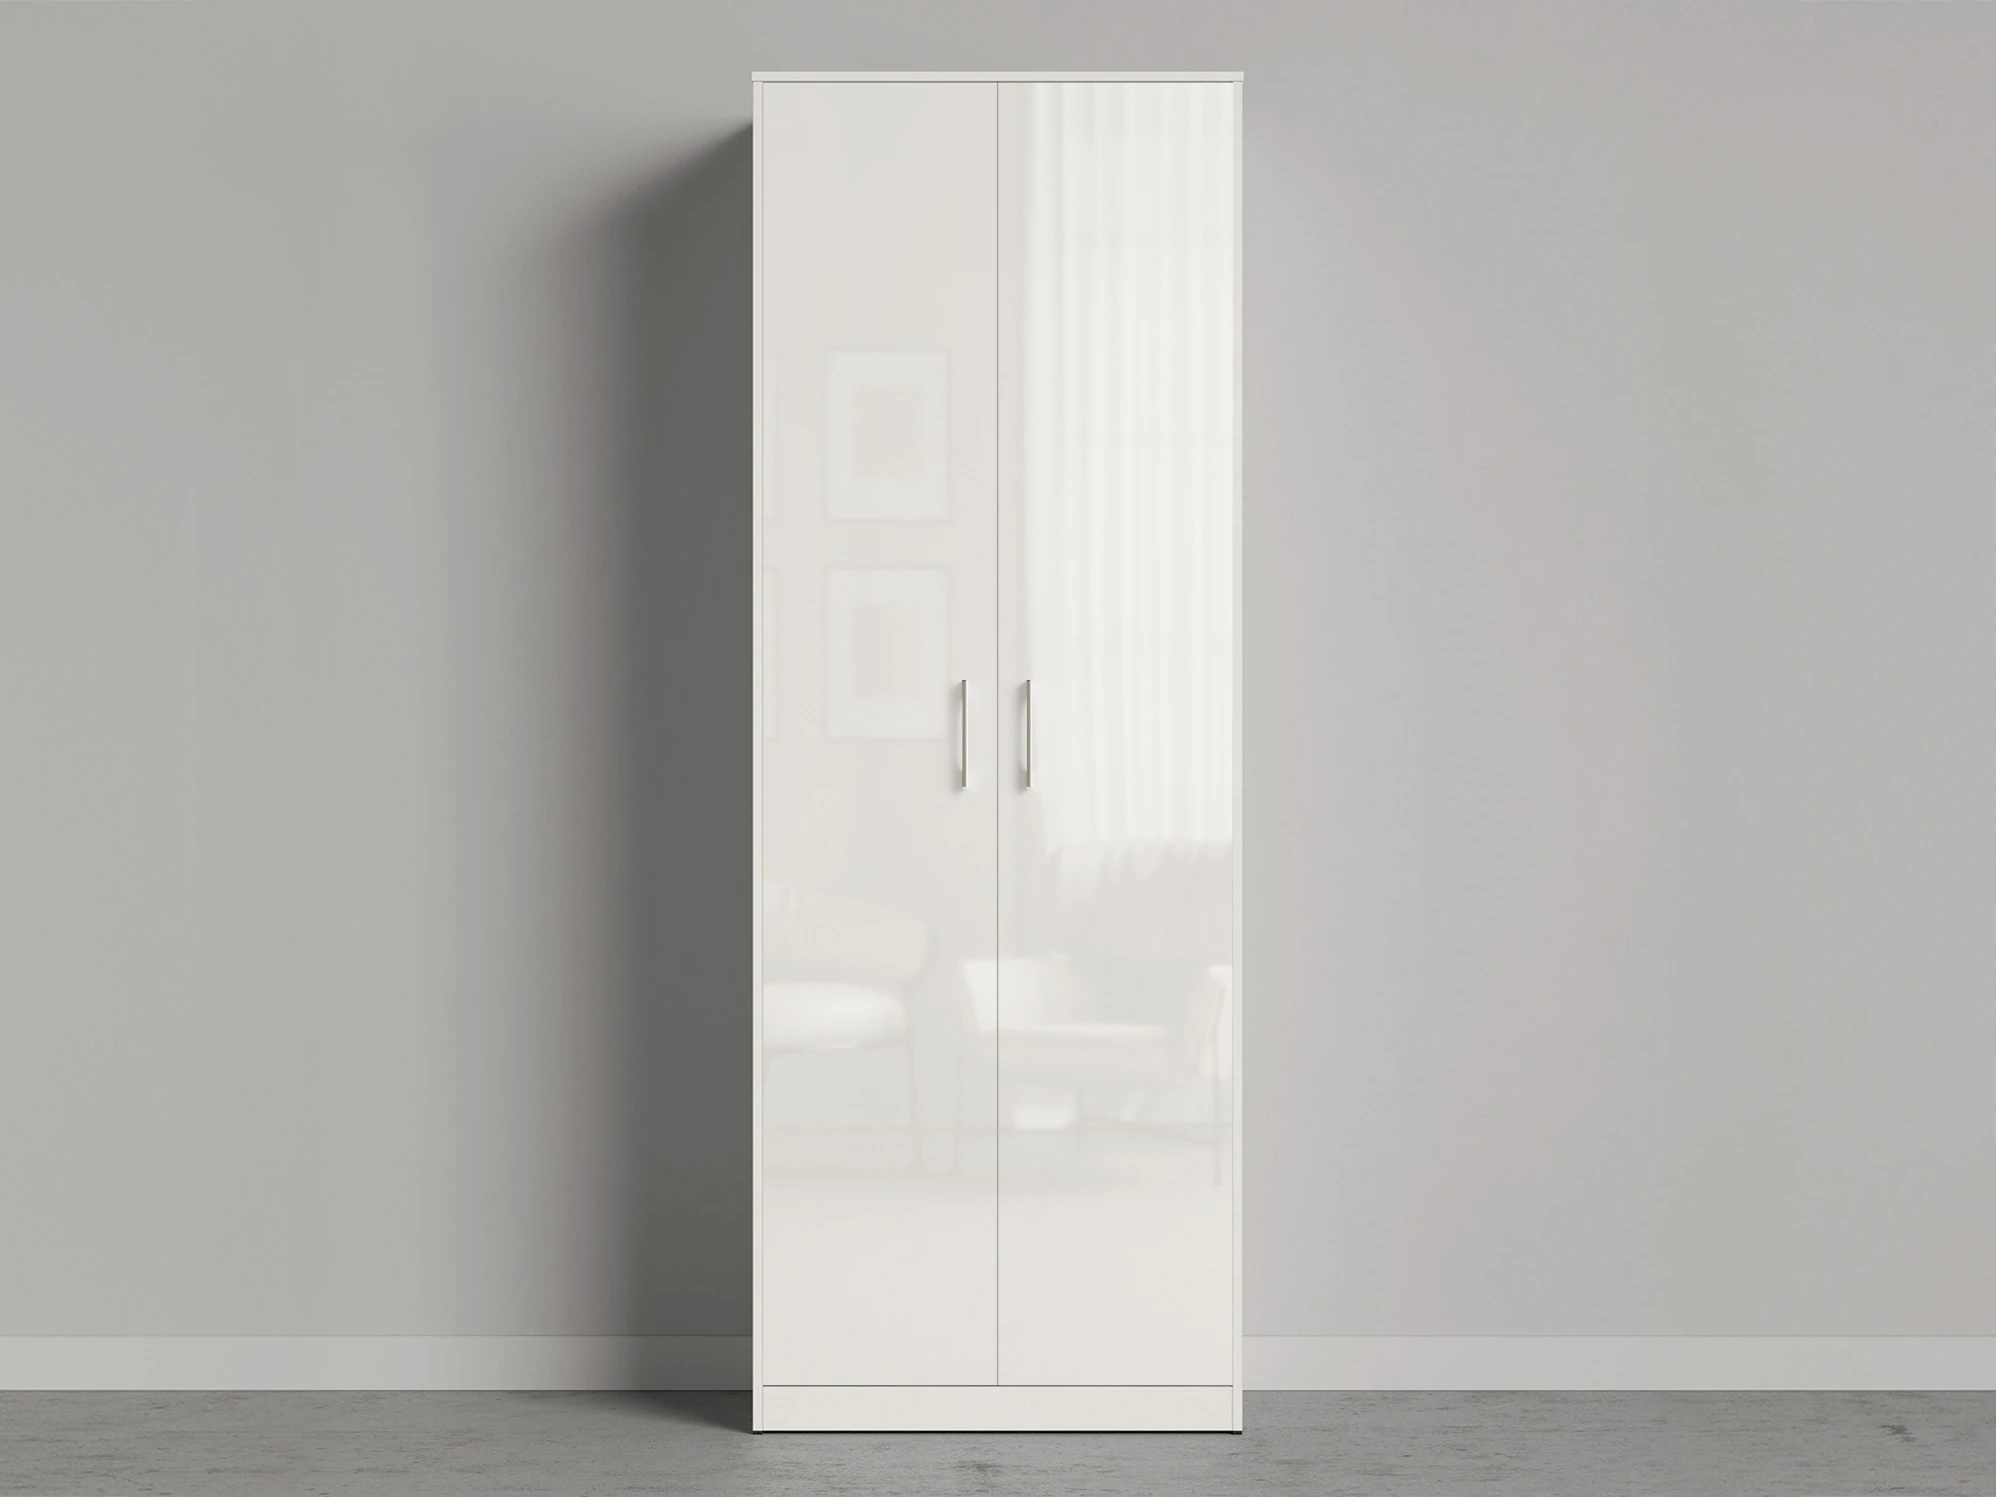 1 Closet 80x220 cm (Standard 45 cm depth) White / White Gloss